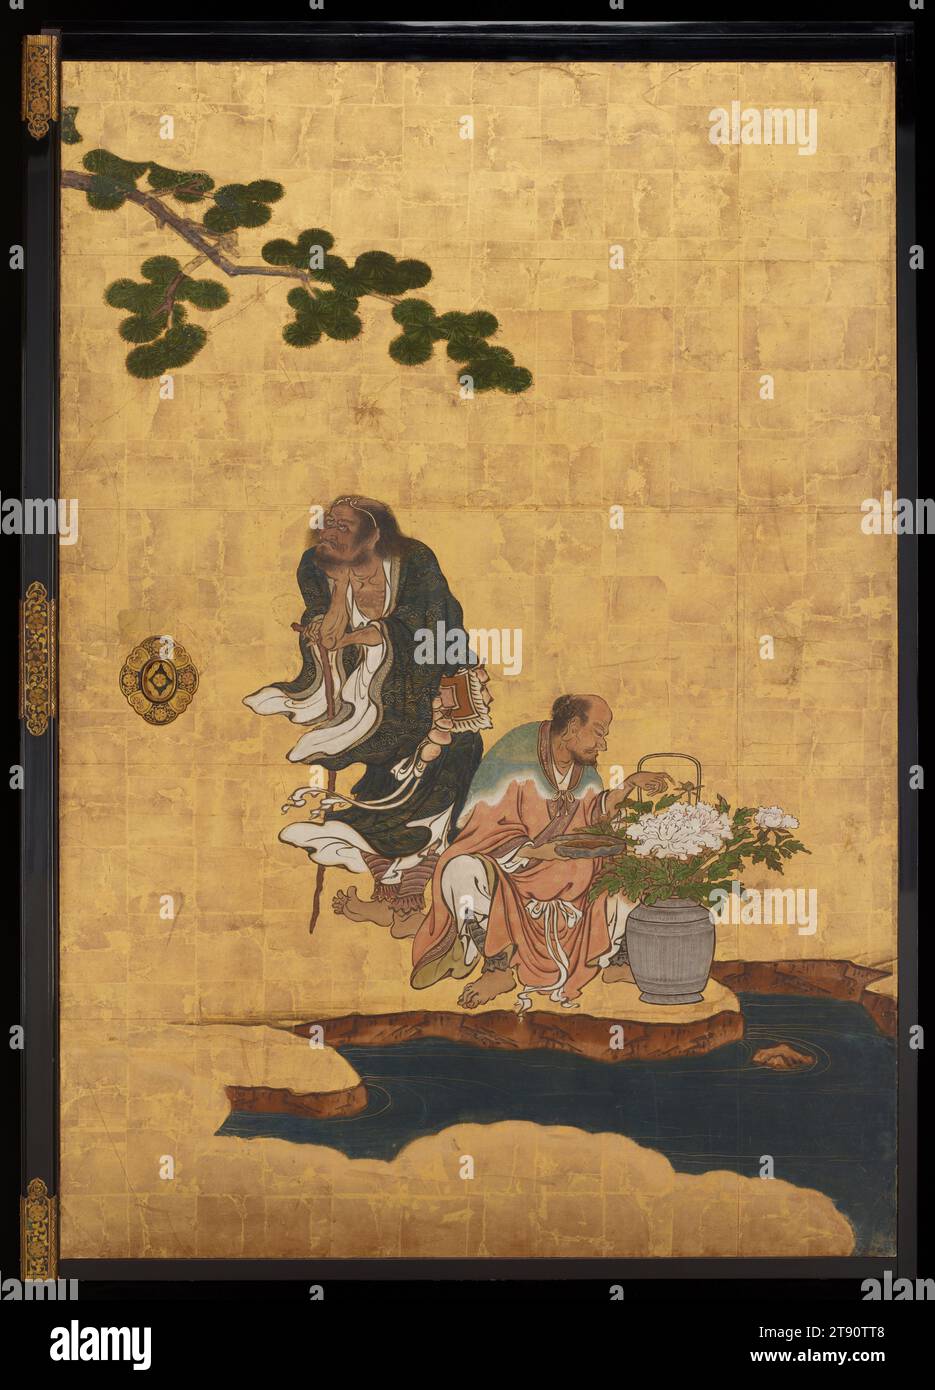 Li Tieguai (links), Han Xiangzi (rechts) Mitte rechts vom Set Daoist Unsterbliche, 1646, Kano Sansetsu, Japanisch, 1589 - 1651, 65 1/2 x 45 1/2 Zoll (166,37 x 115,57 cm) (Bild)69 x 49 x 3/4 Zoll (175,26 x 124,46 x 4,45 cm) (Außenrahmen), Tinte, Farbe und Blattgold auf Papier, Japan, 17. Jahrhundert, diese Schiebetürpaneele (fusuma) zeigen eine Gruppe chinesischer Daoistischer Unsterblicher. Die Chinesen glaubten, die Unsterblichen seien historische und legendäre Persönlichkeiten, die es durch moralische Tugend, Glauben und Disziplin schafften, die Grenzen der natürlichen Welt zu überschreiten und ewig zu leben. Sie wurden als Heilige verehrt Stockfoto